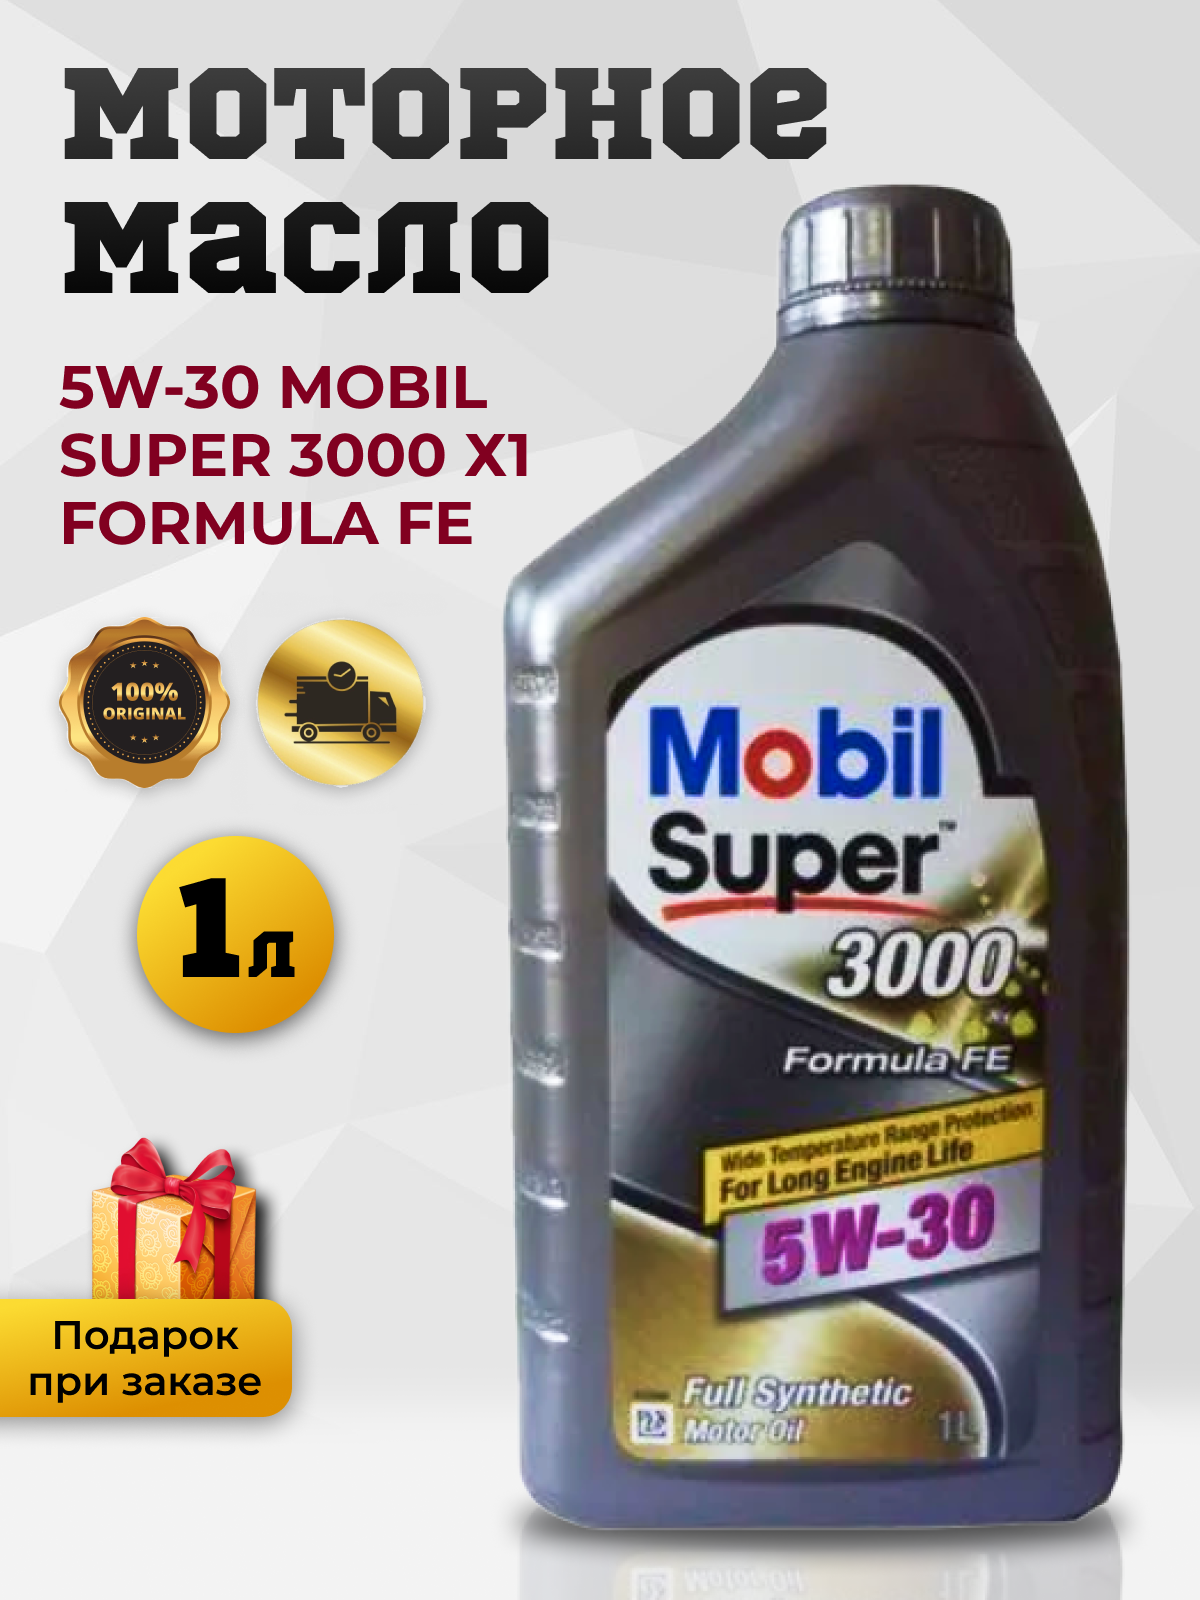 Моторное масло Mobil Super 3000 Х1 Formula FE синтетическое, 5W-30, 4 л